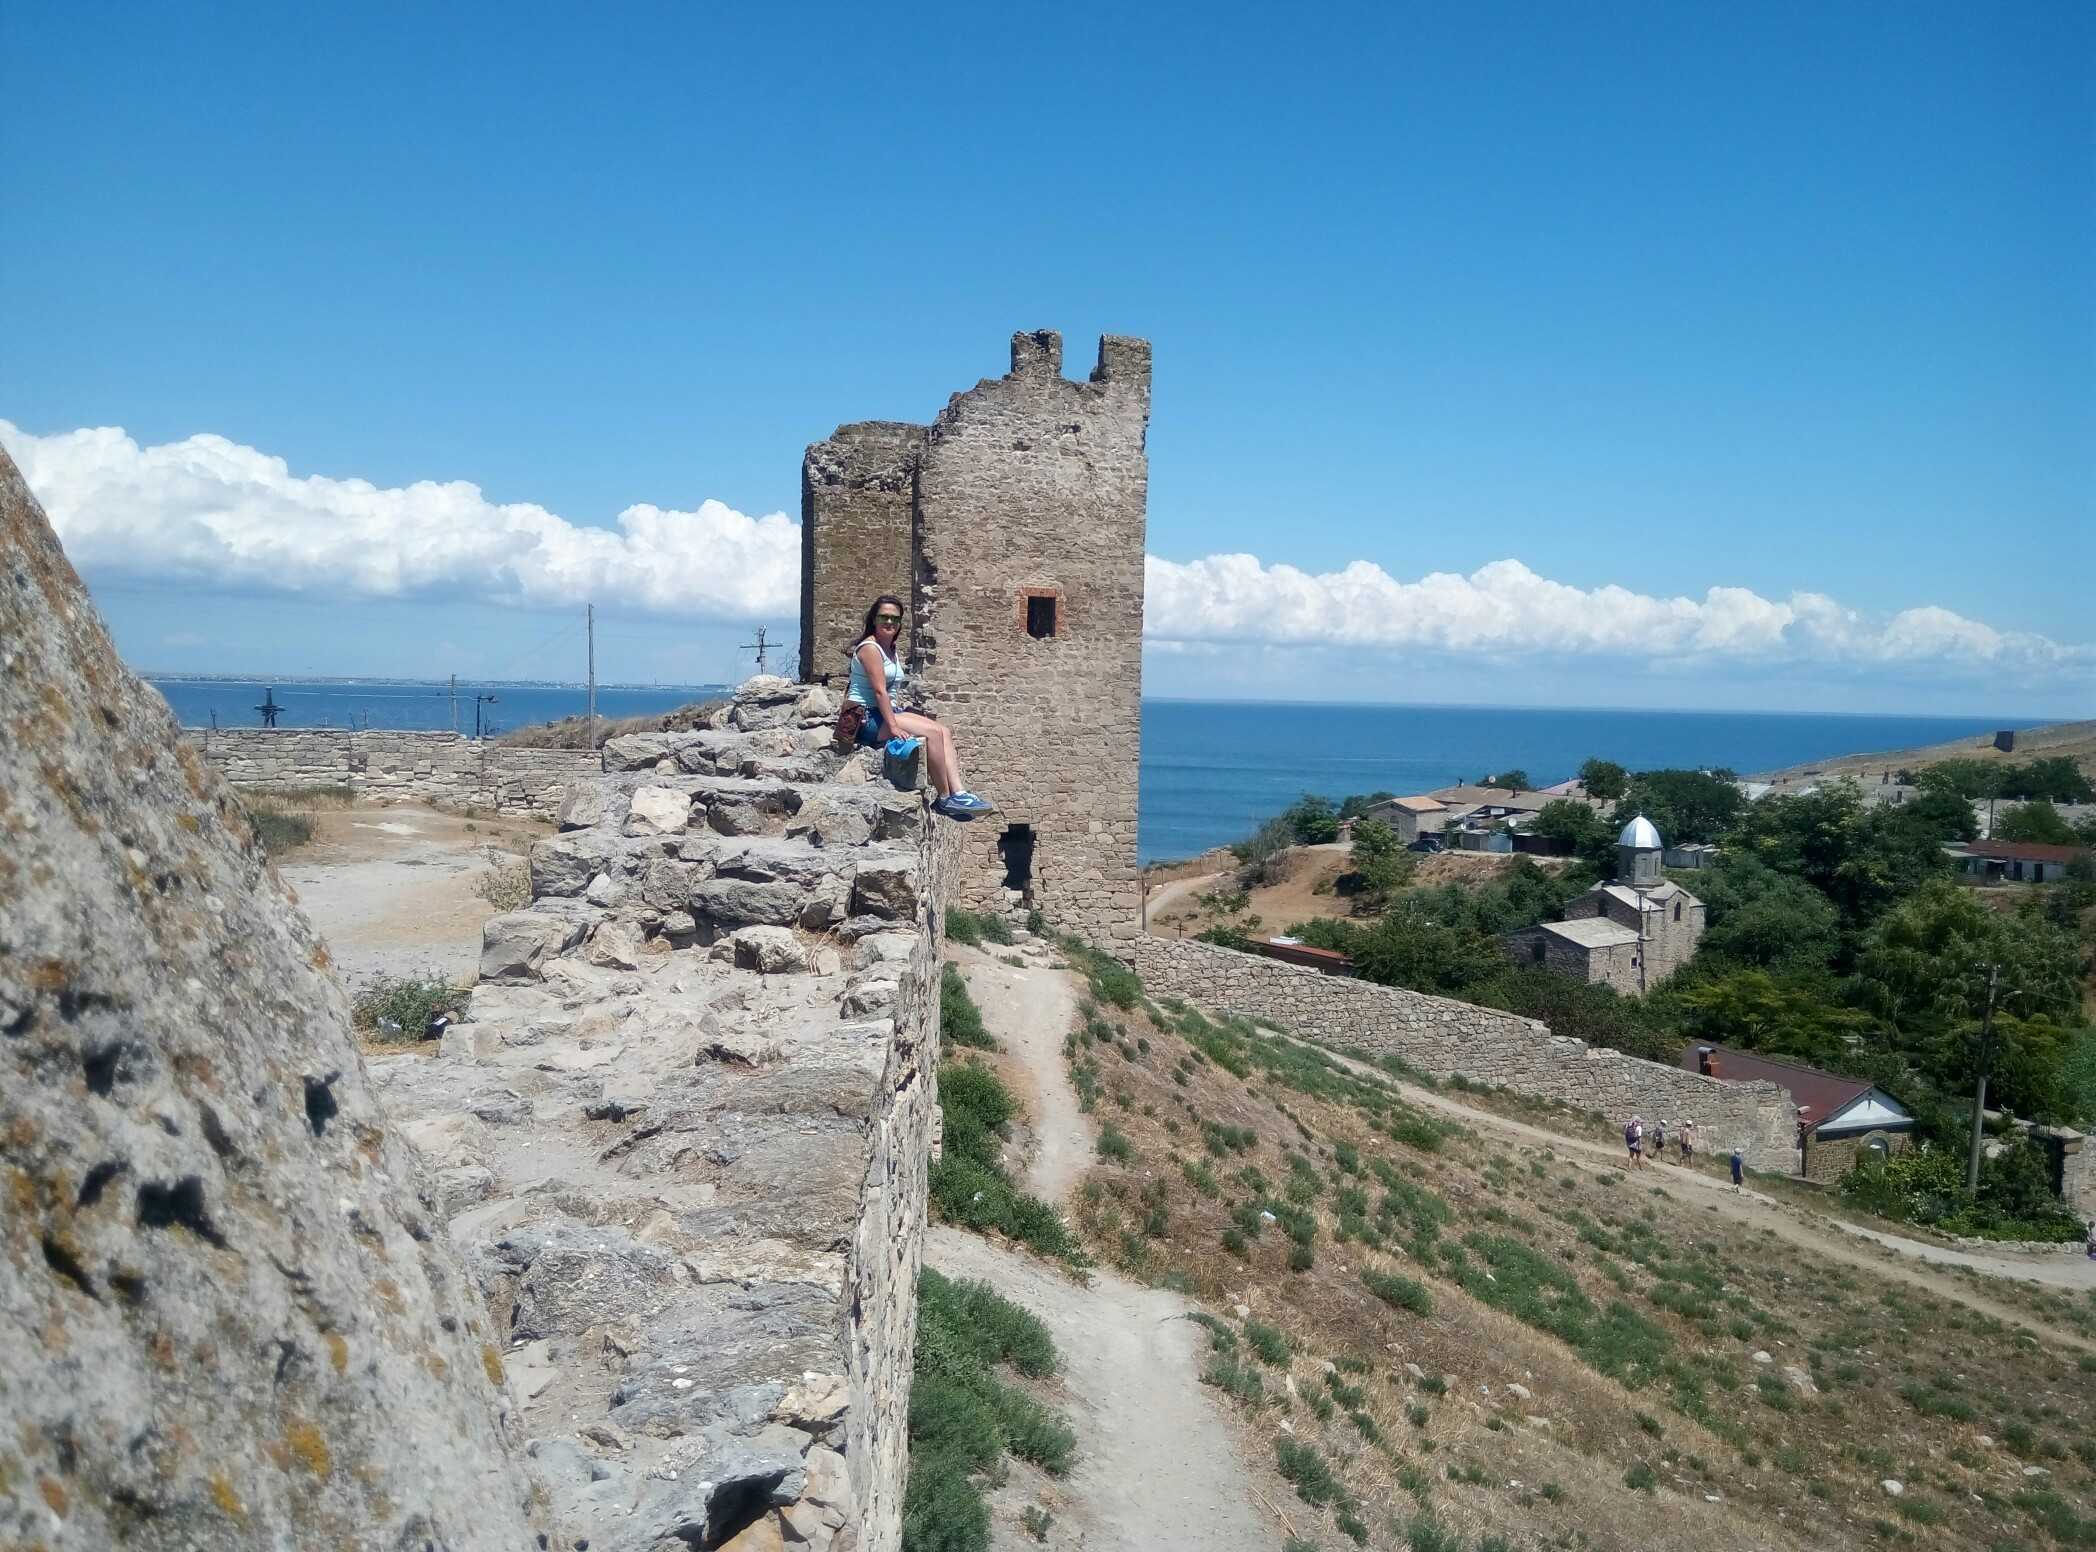 Из исторических объектов Феодосии до настоящего времени сохранились остатки некогда величественной крепости, созданной генуэзцами в средние века - это Генуэзская крепость или Кафа